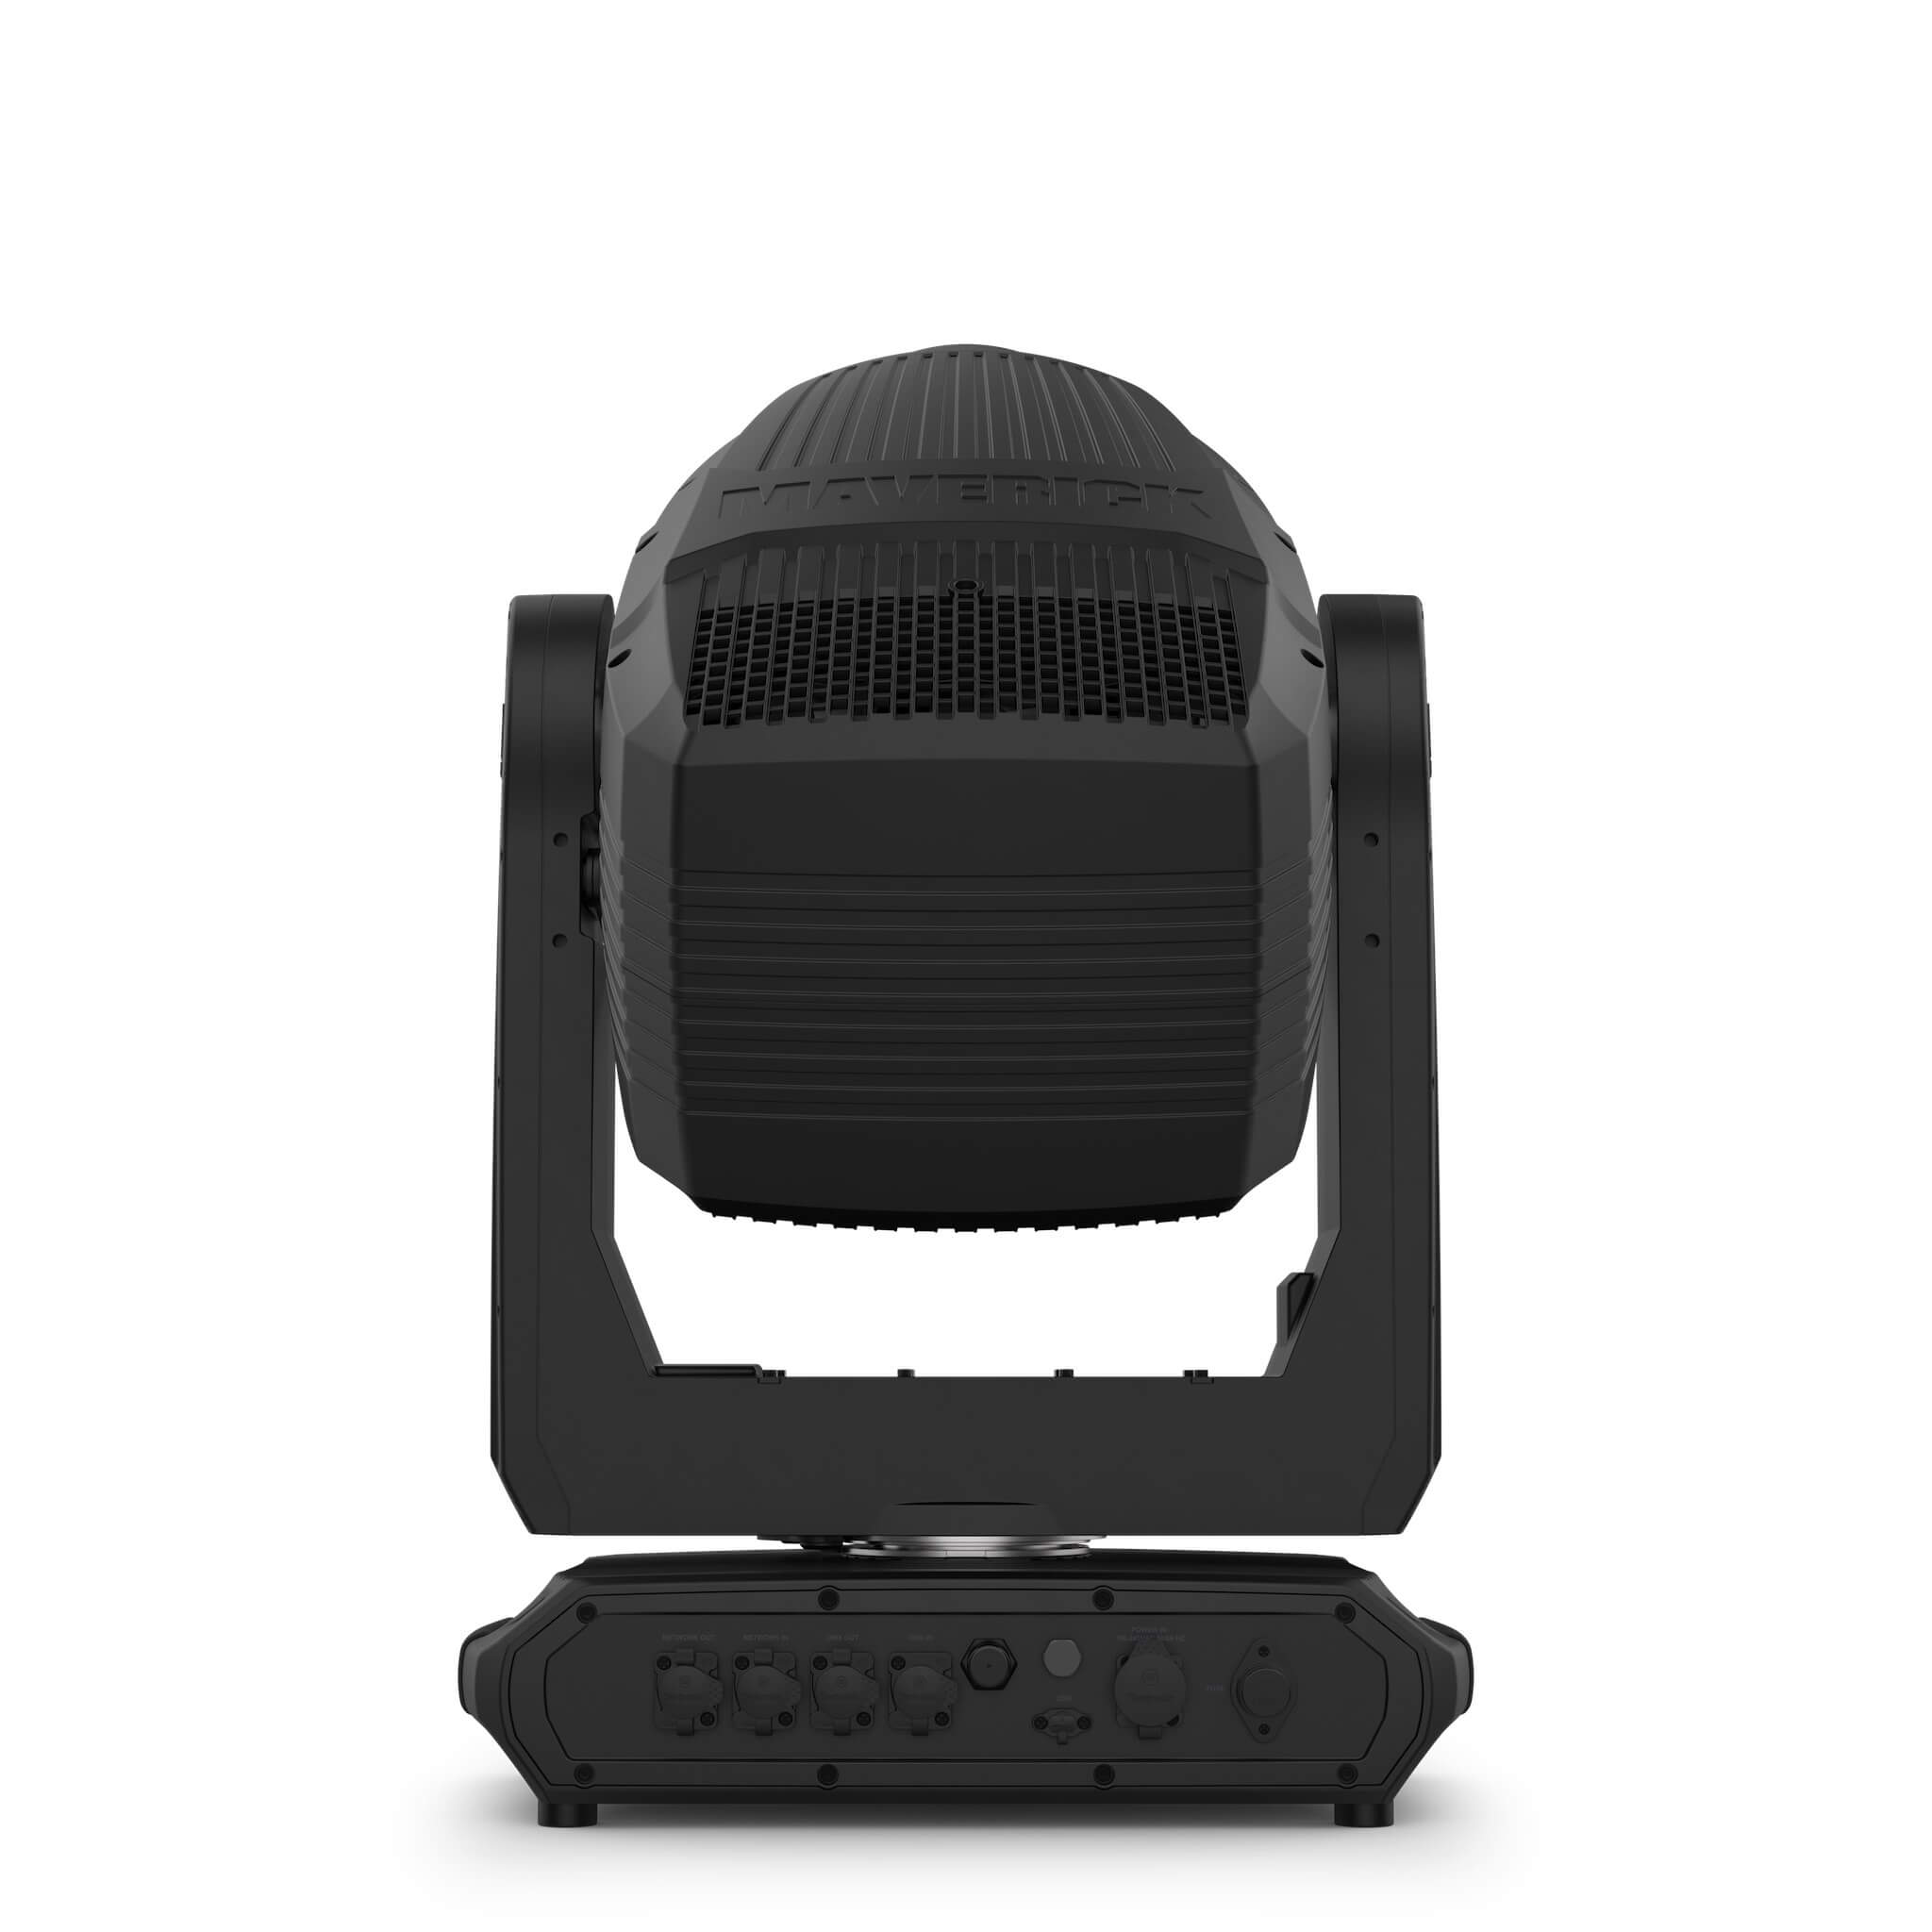 Chauvet Professional Maverick Storm 4 Profile - LED Moving Head Light, back